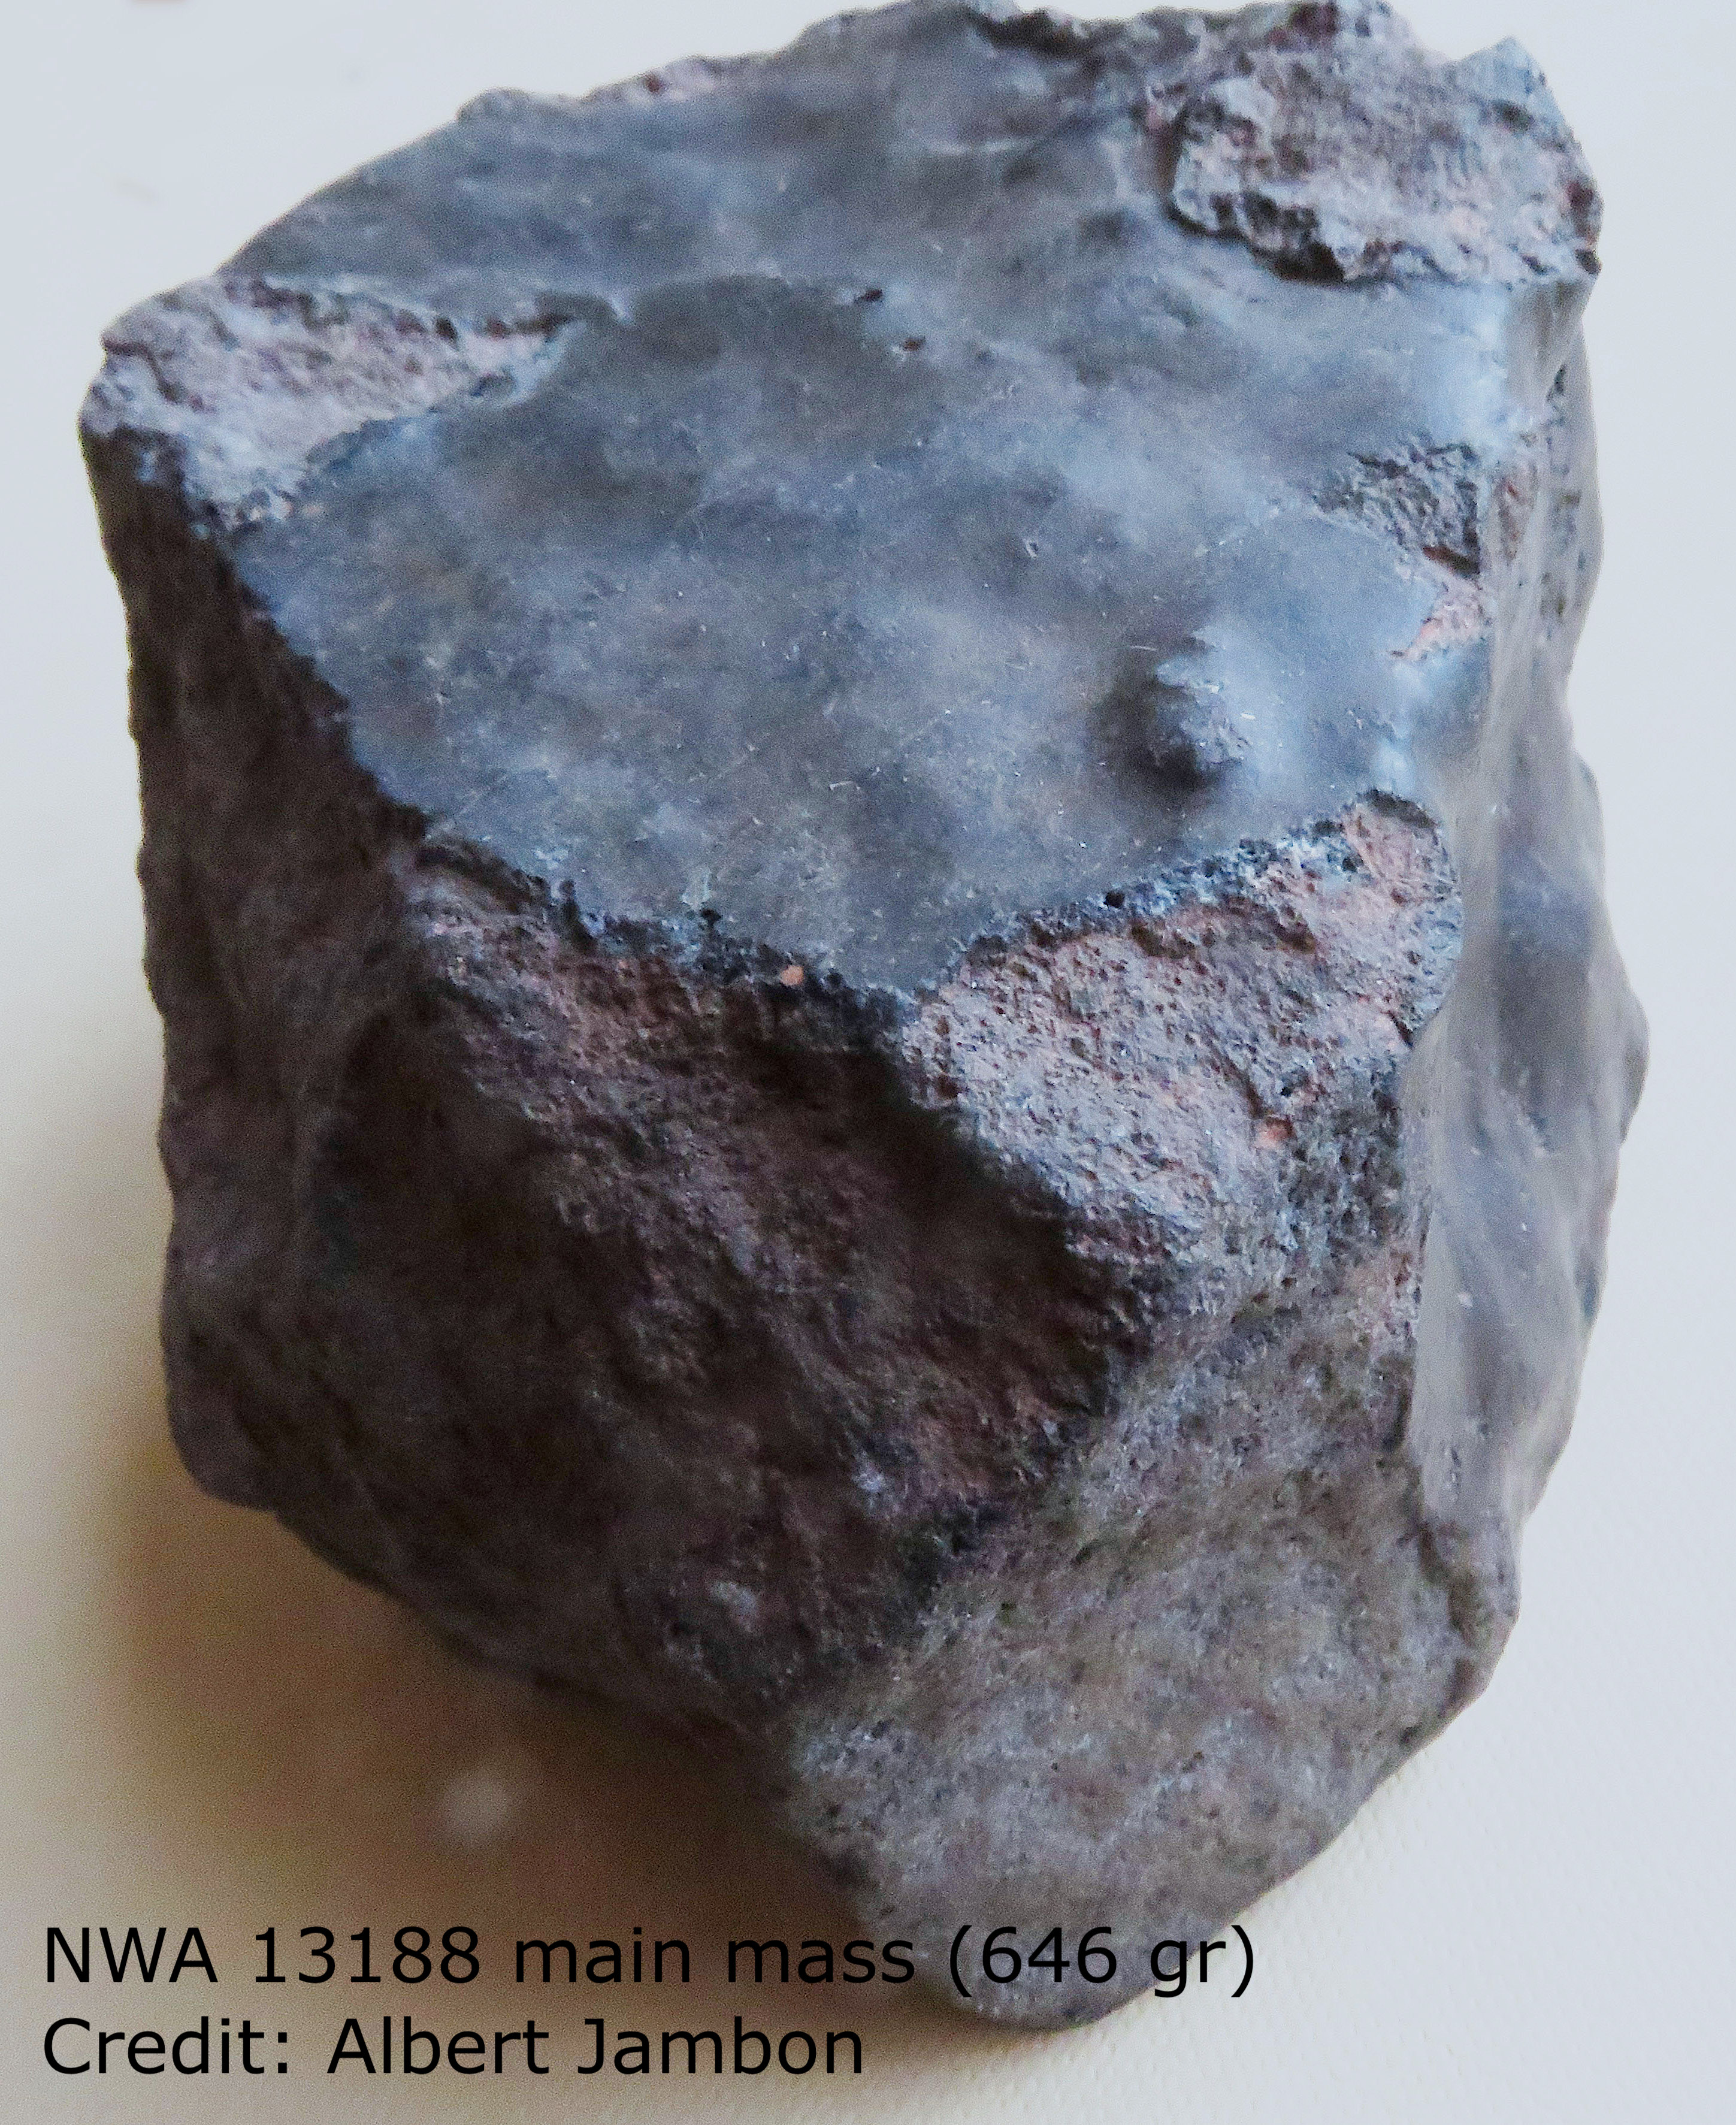 Pełny obraz kosmicznej skały jest pokazany w tytule.